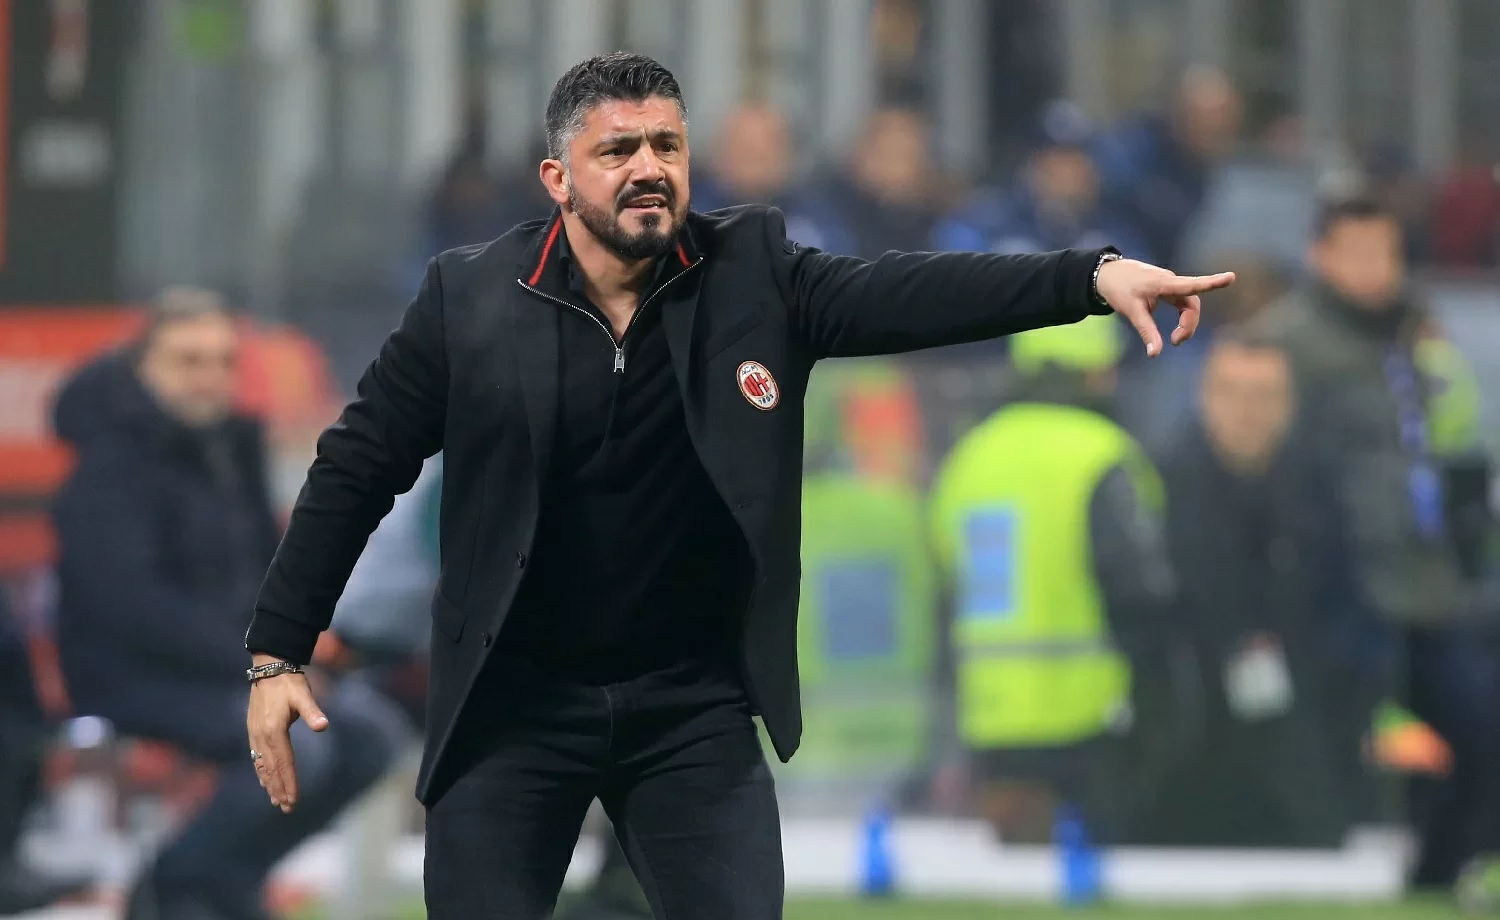 CONVOCATI/ Milan, le scelte di Gattuso per la sfida contro la Sampdoria: out Kalinic